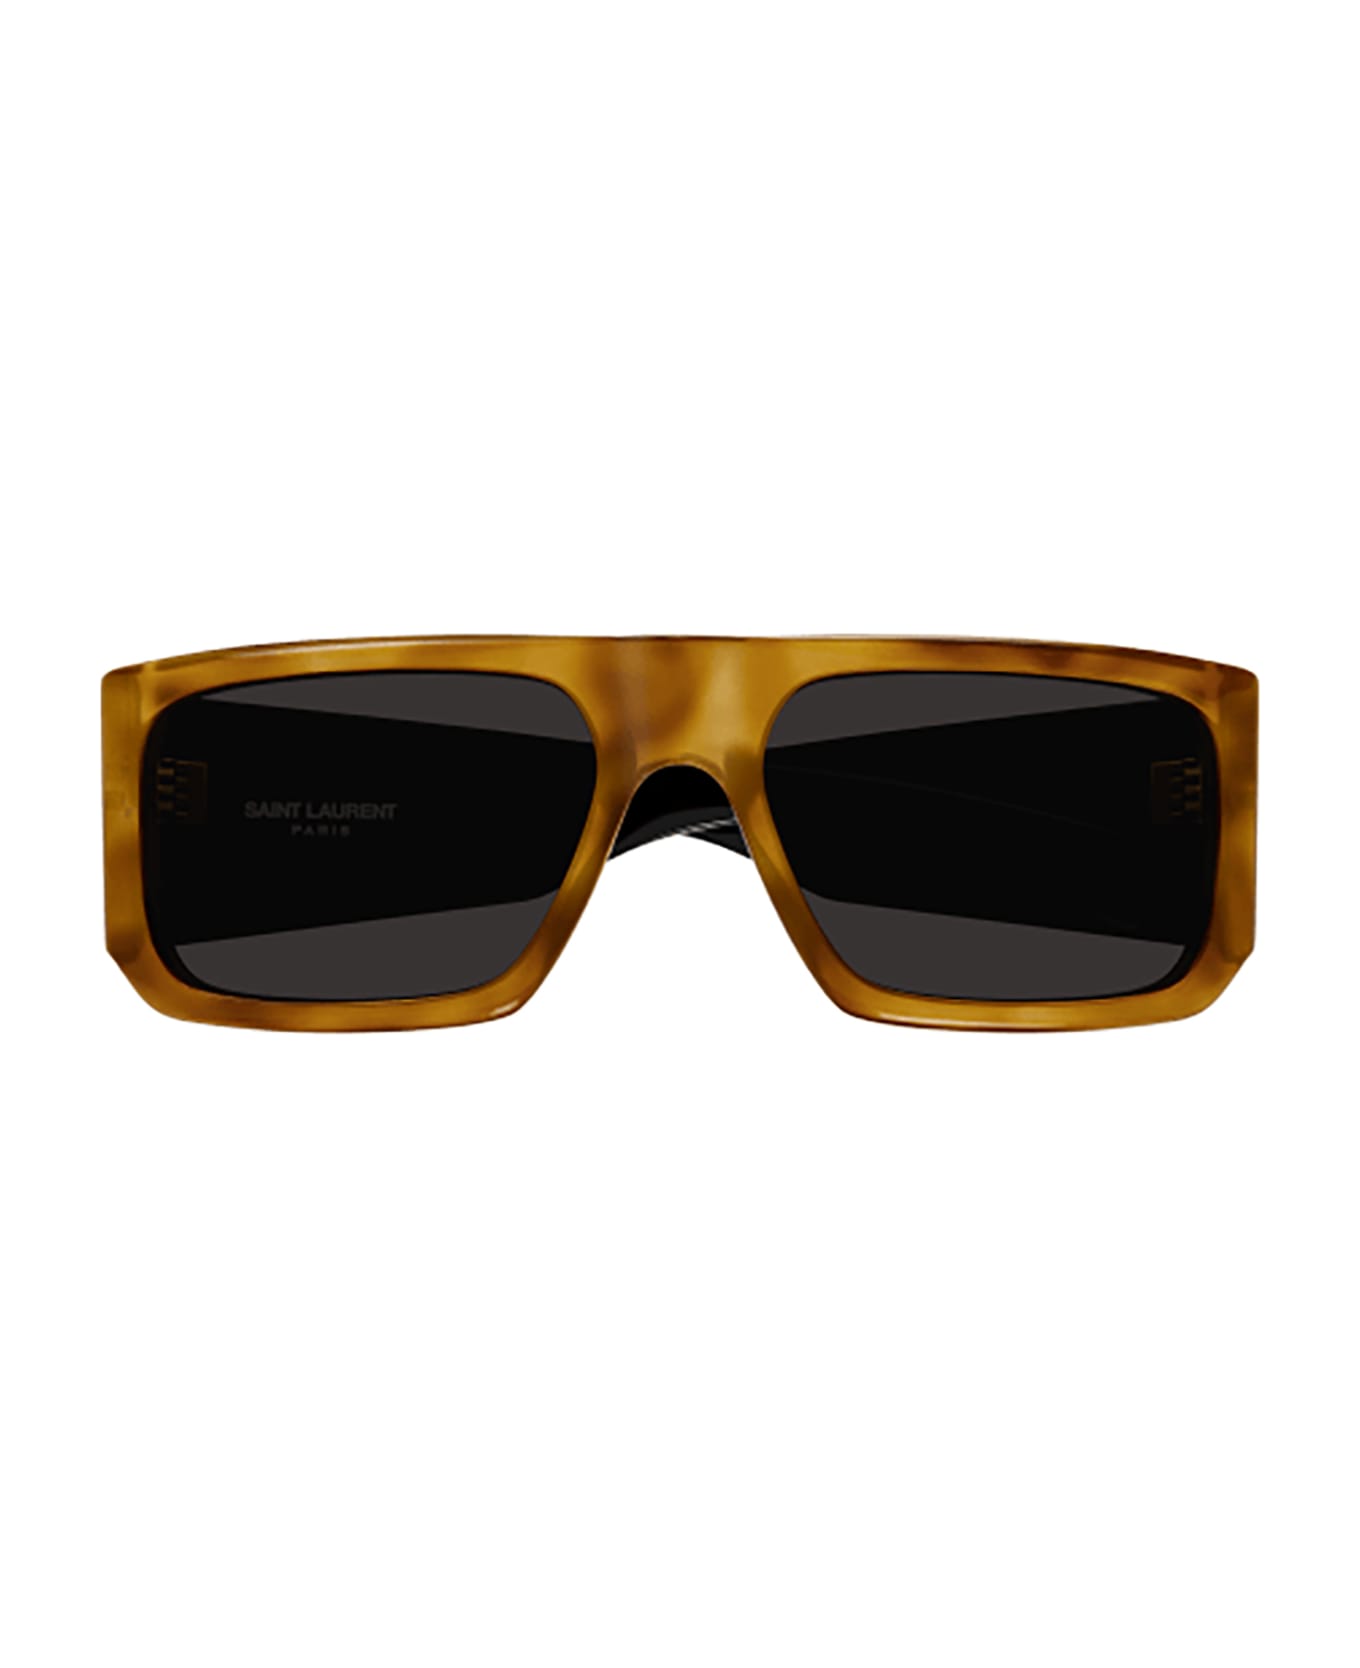 Saint Laurent Eyewear Sl 635 Acetate Sunglasses - 005 havana black black